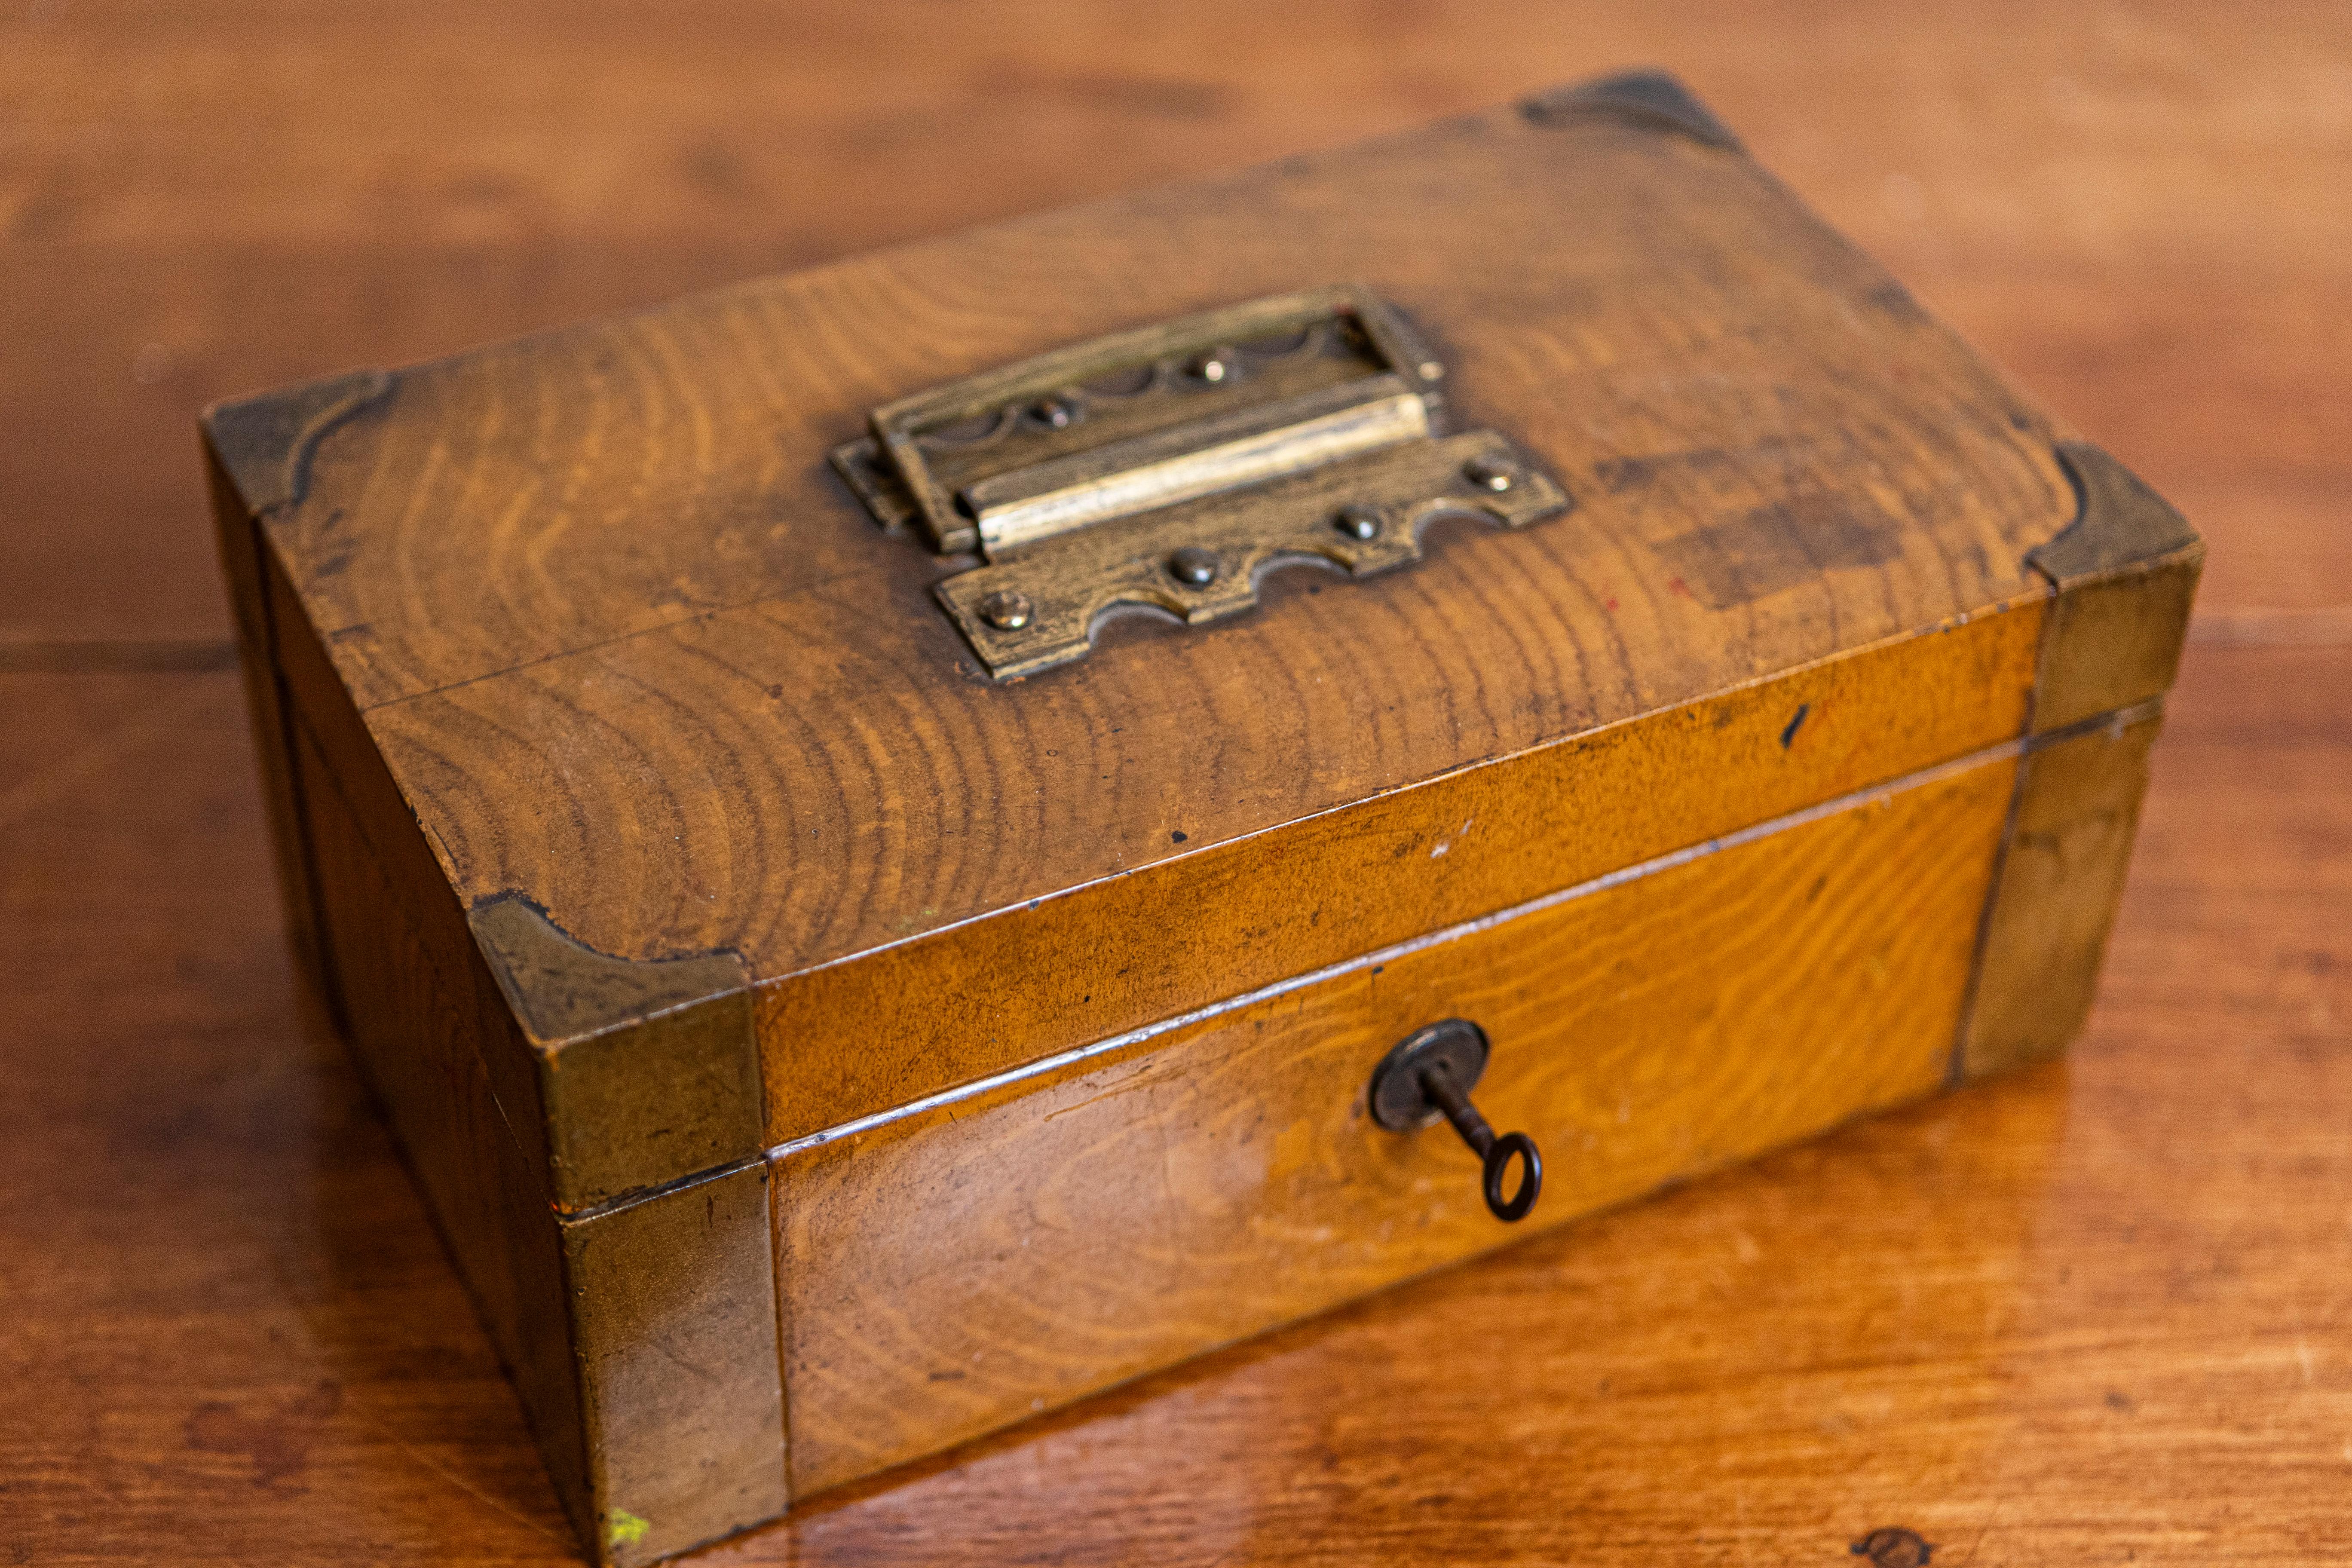 Boîte de rangement bancaire anglaise d'époque victorienne du XIXe siècle, avec coins en laiton et métal amovible.  intérieur. Cette boîte de rangement de banque anglaise d'époque victorienne du XIXe siècle est un exemple d'utilité traditionnelle et